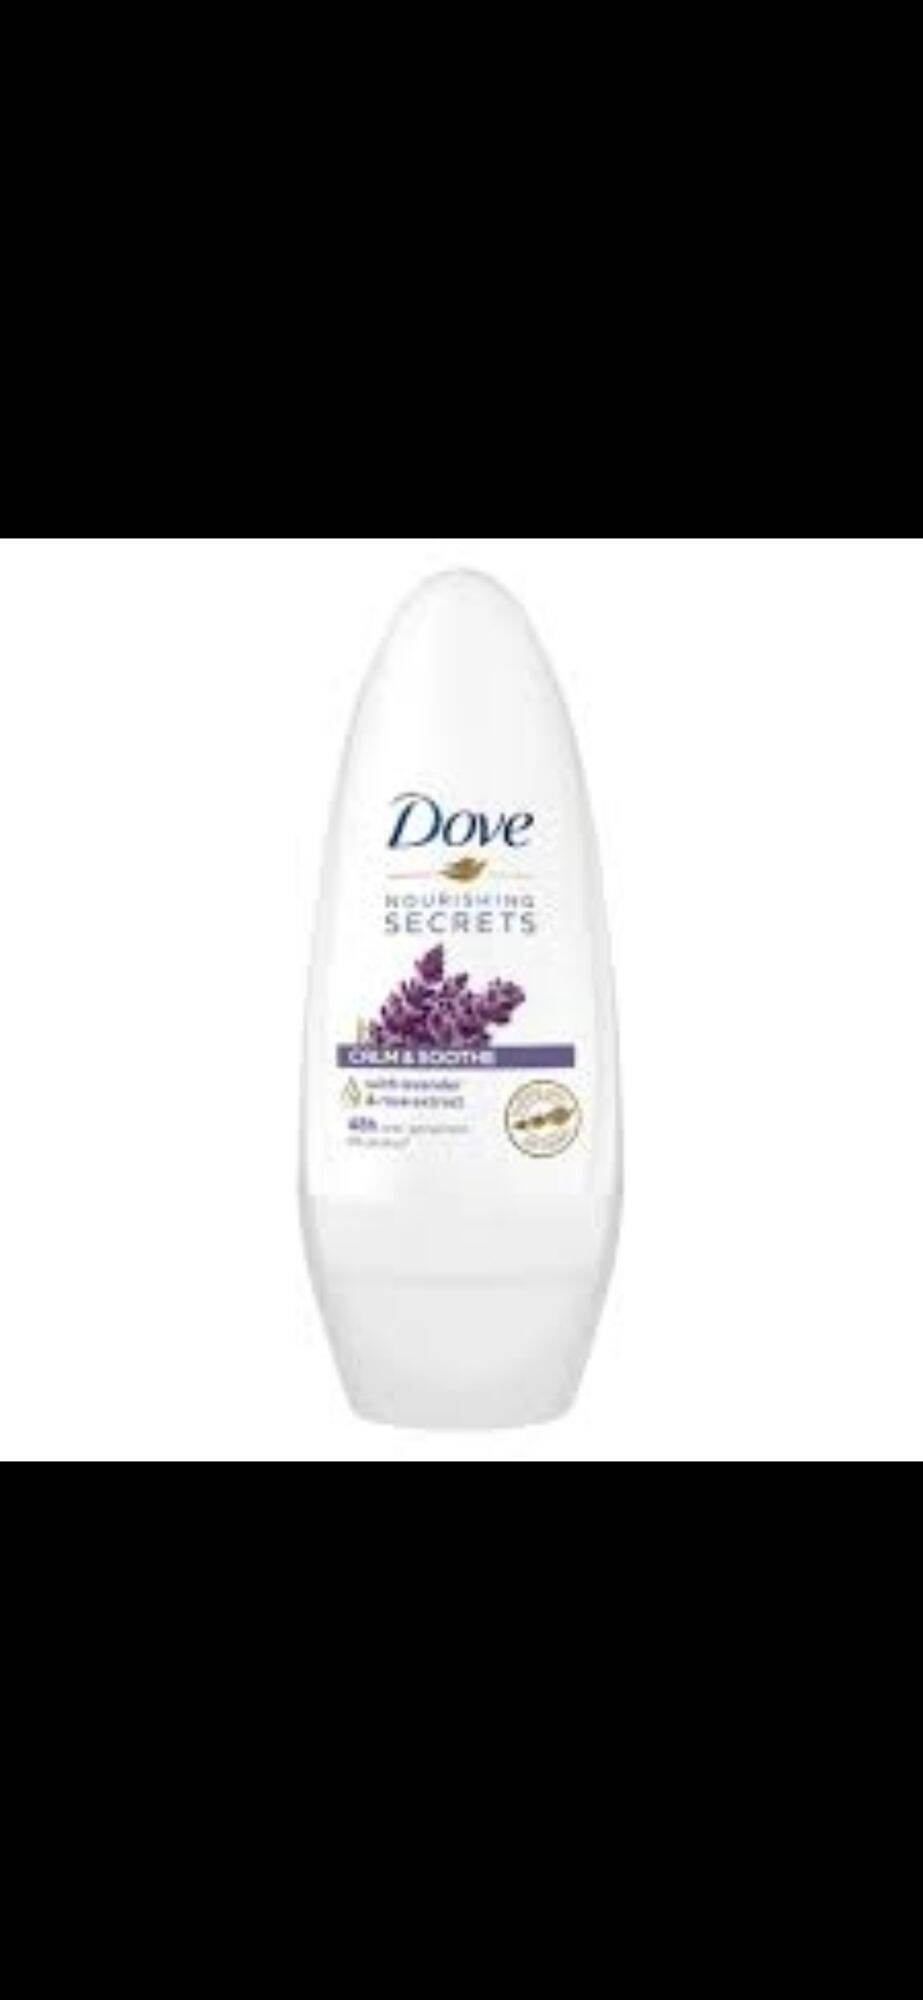 Lăn ngăn mùi Dove chiết suất hoa Oải hương 40ml nhập khẩu Đức.